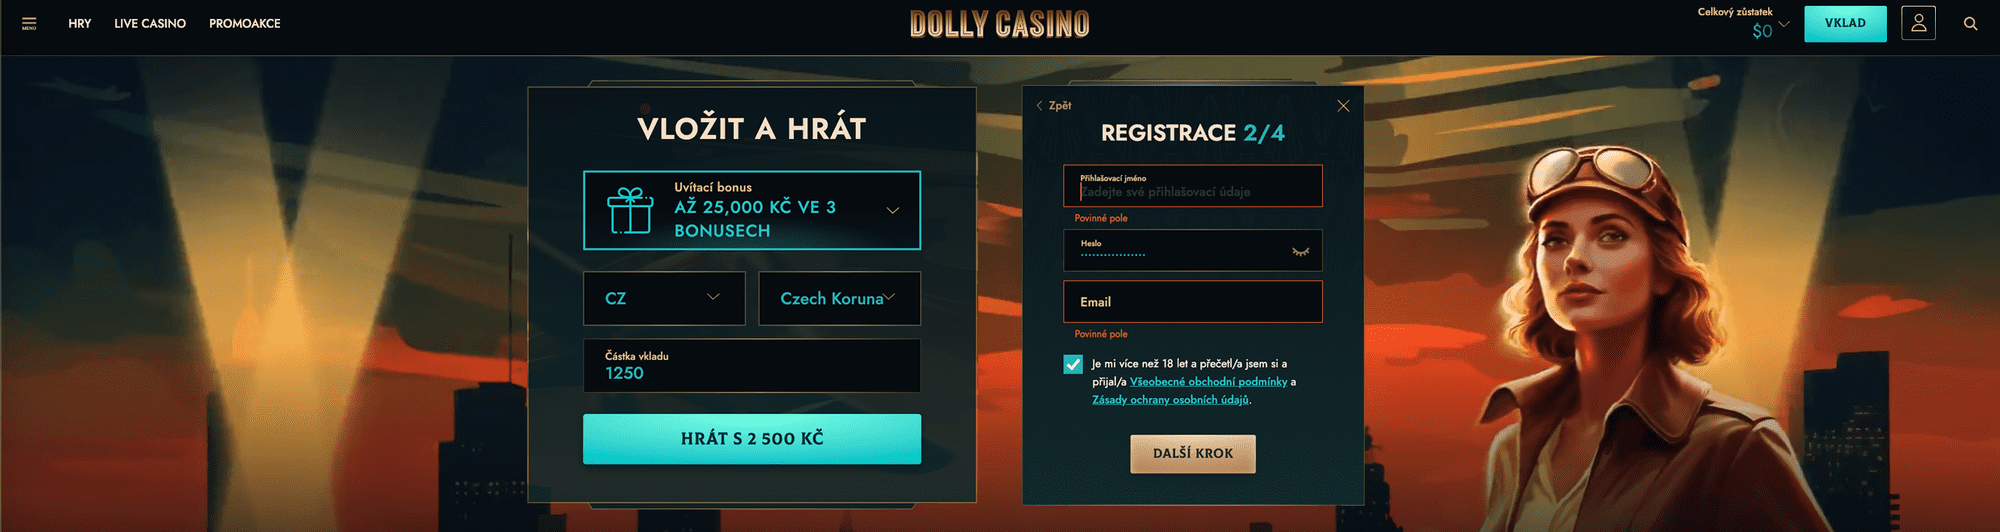 Registrace na webových stránkách Dolly Casino